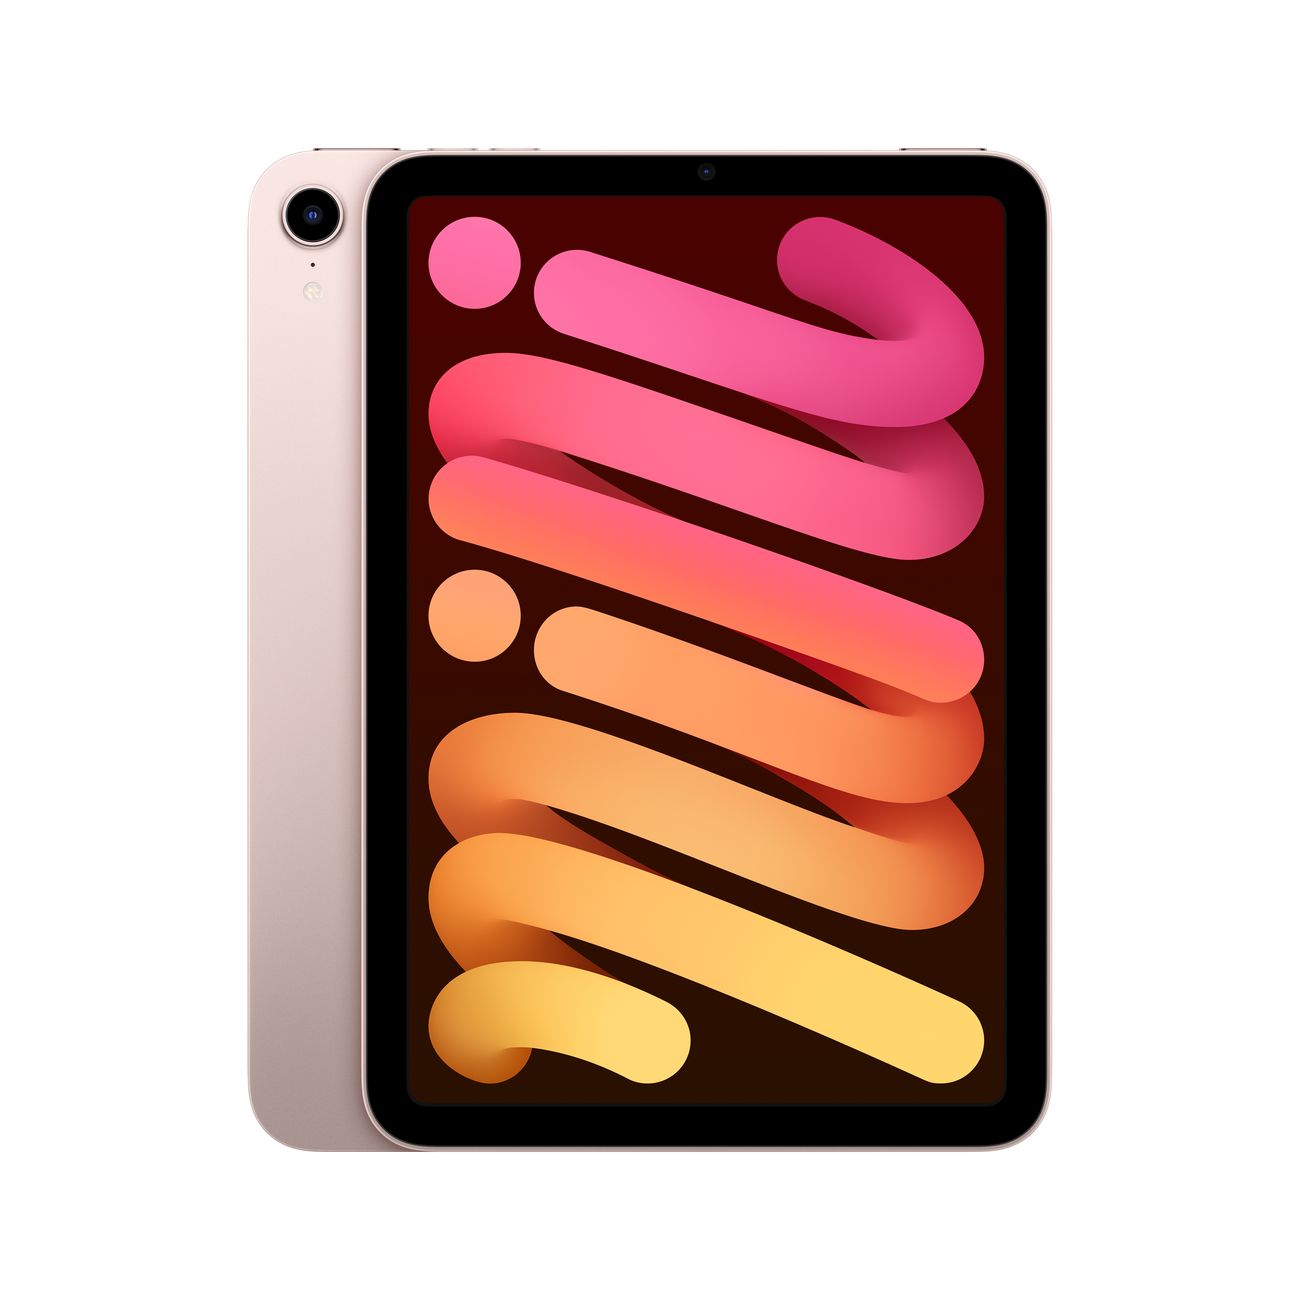 Купить планшет apple ipad mini wi-fi+cell 256gb pink (mlx93) Apple iPad mini в официальном магазине Apple, Samsung, Xiaomi. iPixel.ru Купить, заказ, кредит, рассрочка, отзывы,  характеристики, цена,  фотографии, в подарок.